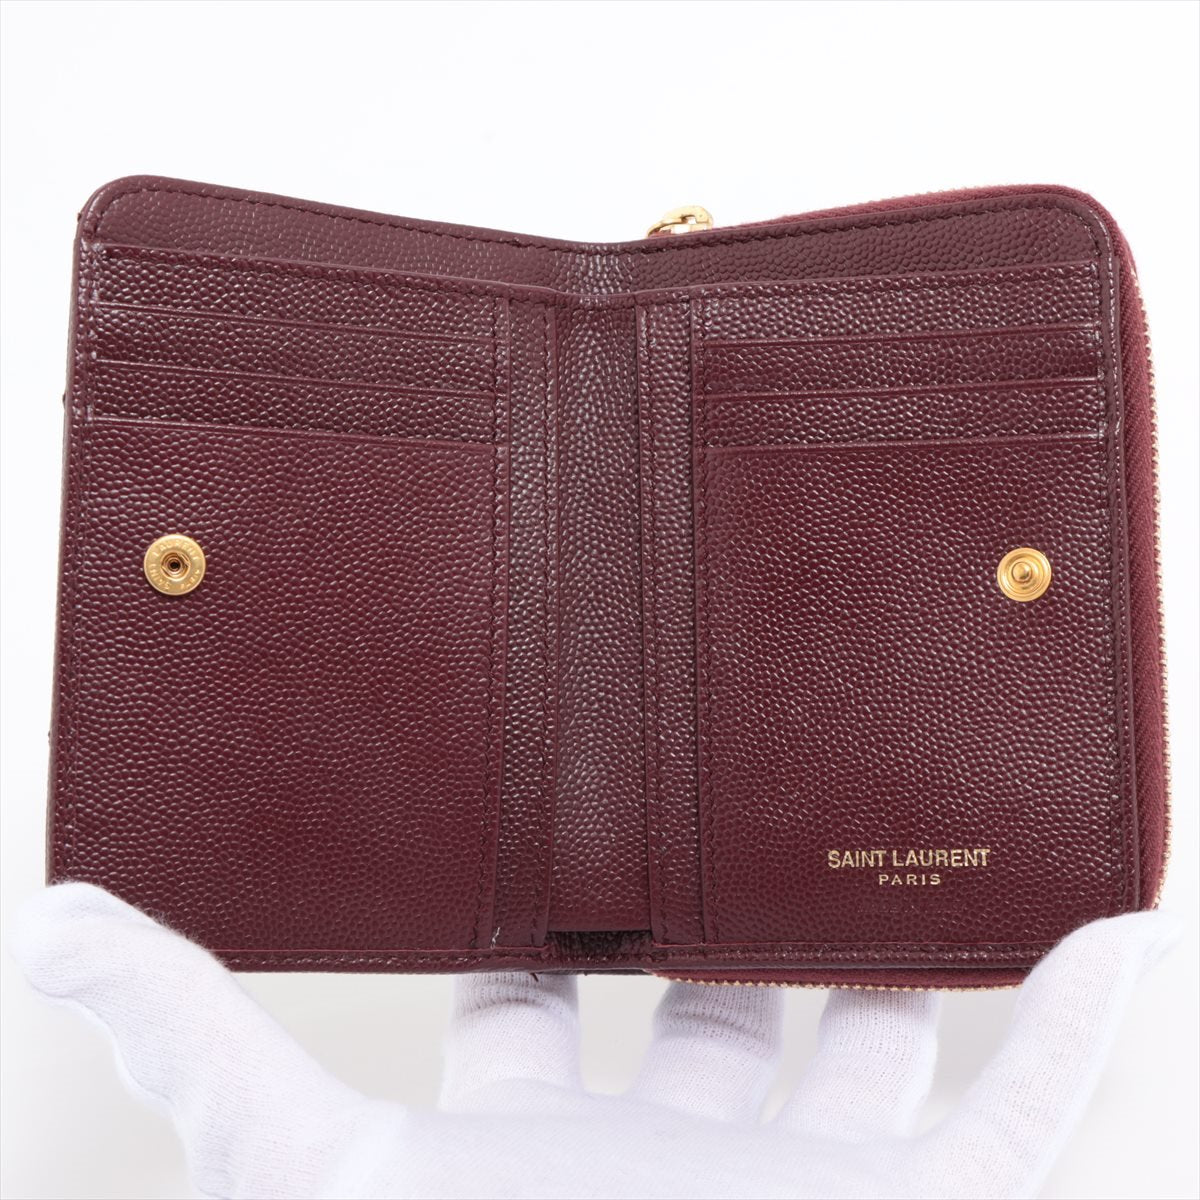 Saint Laurent Paris V Stitch GUE403723 Leather Compact Wallet Bordeaux